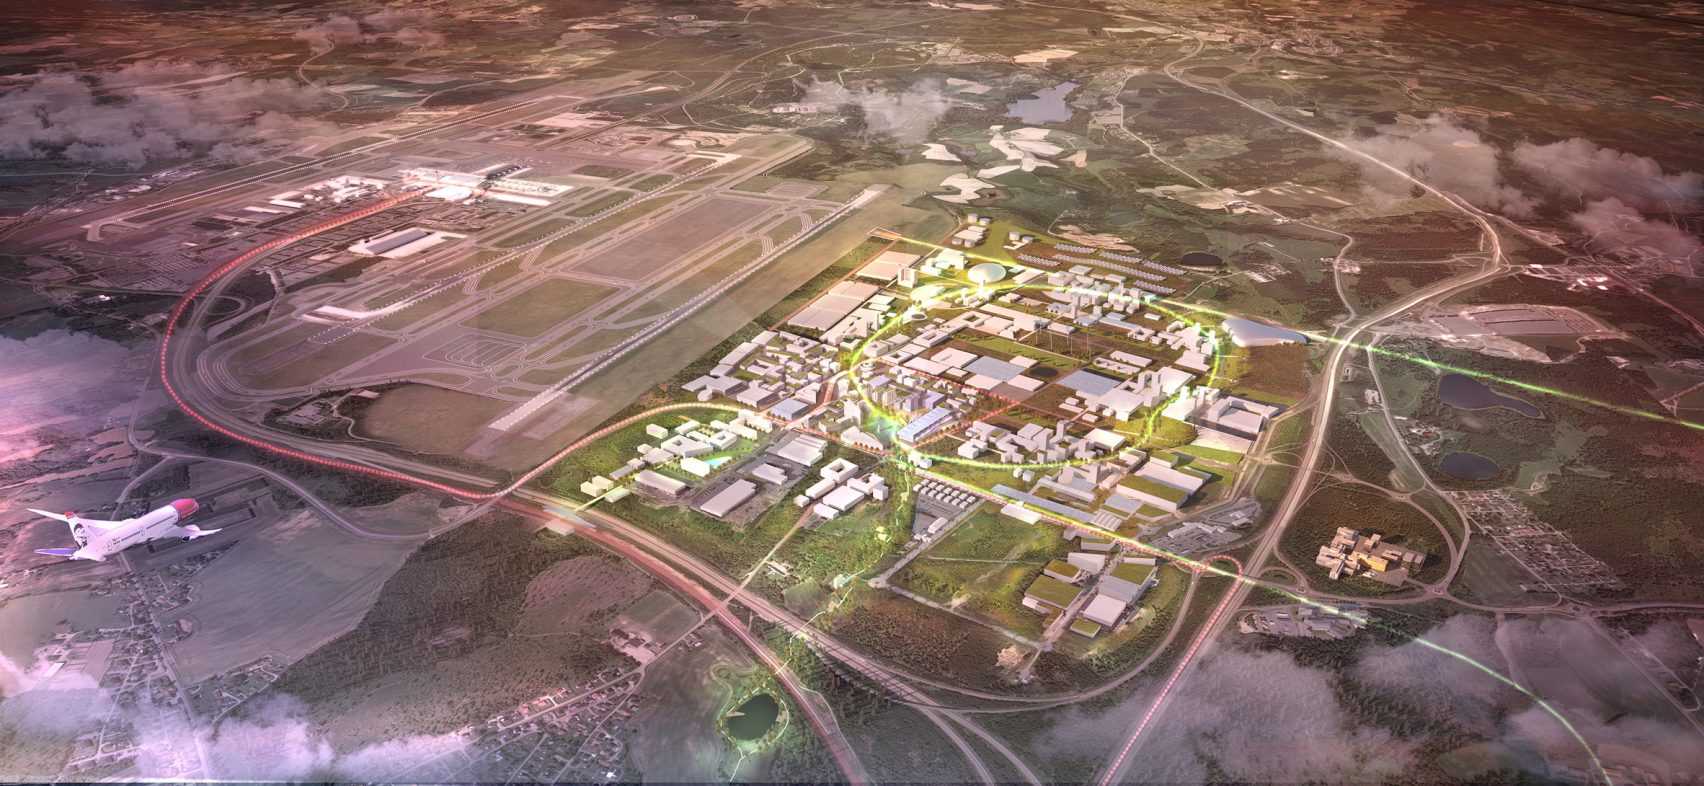  Oslos flygplats ska bli en hållbar framtidsstad